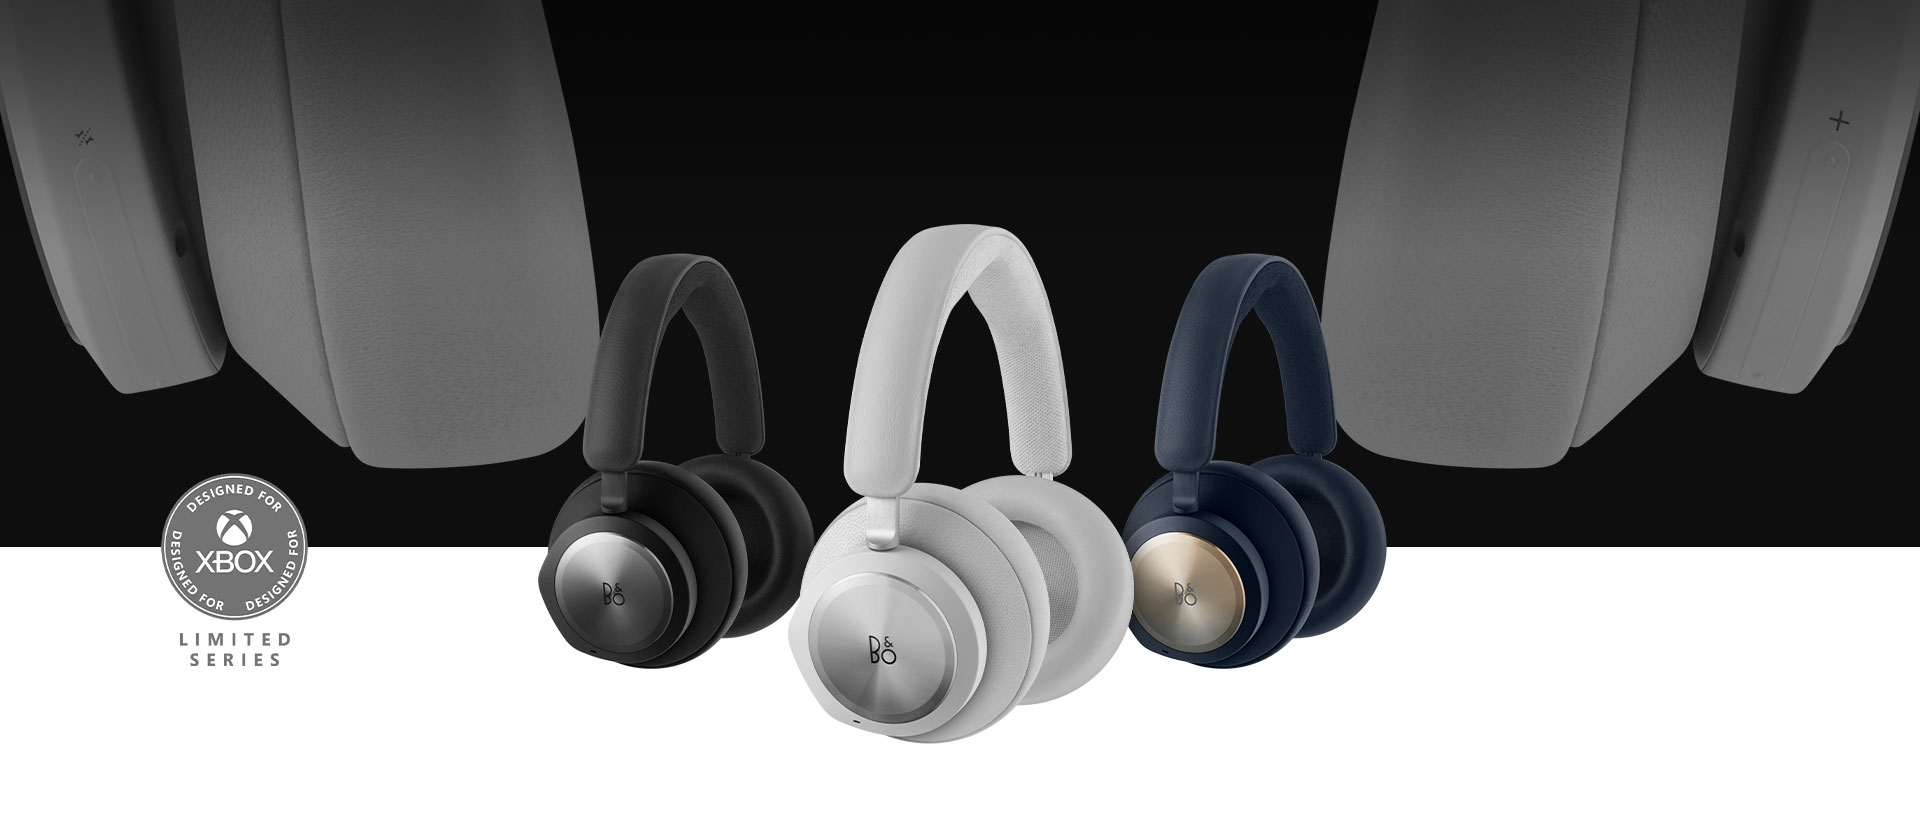 Designed for Xbox，Band and Olufsen 灰色耳機在前方，後方是黑色和海軍藍耳機